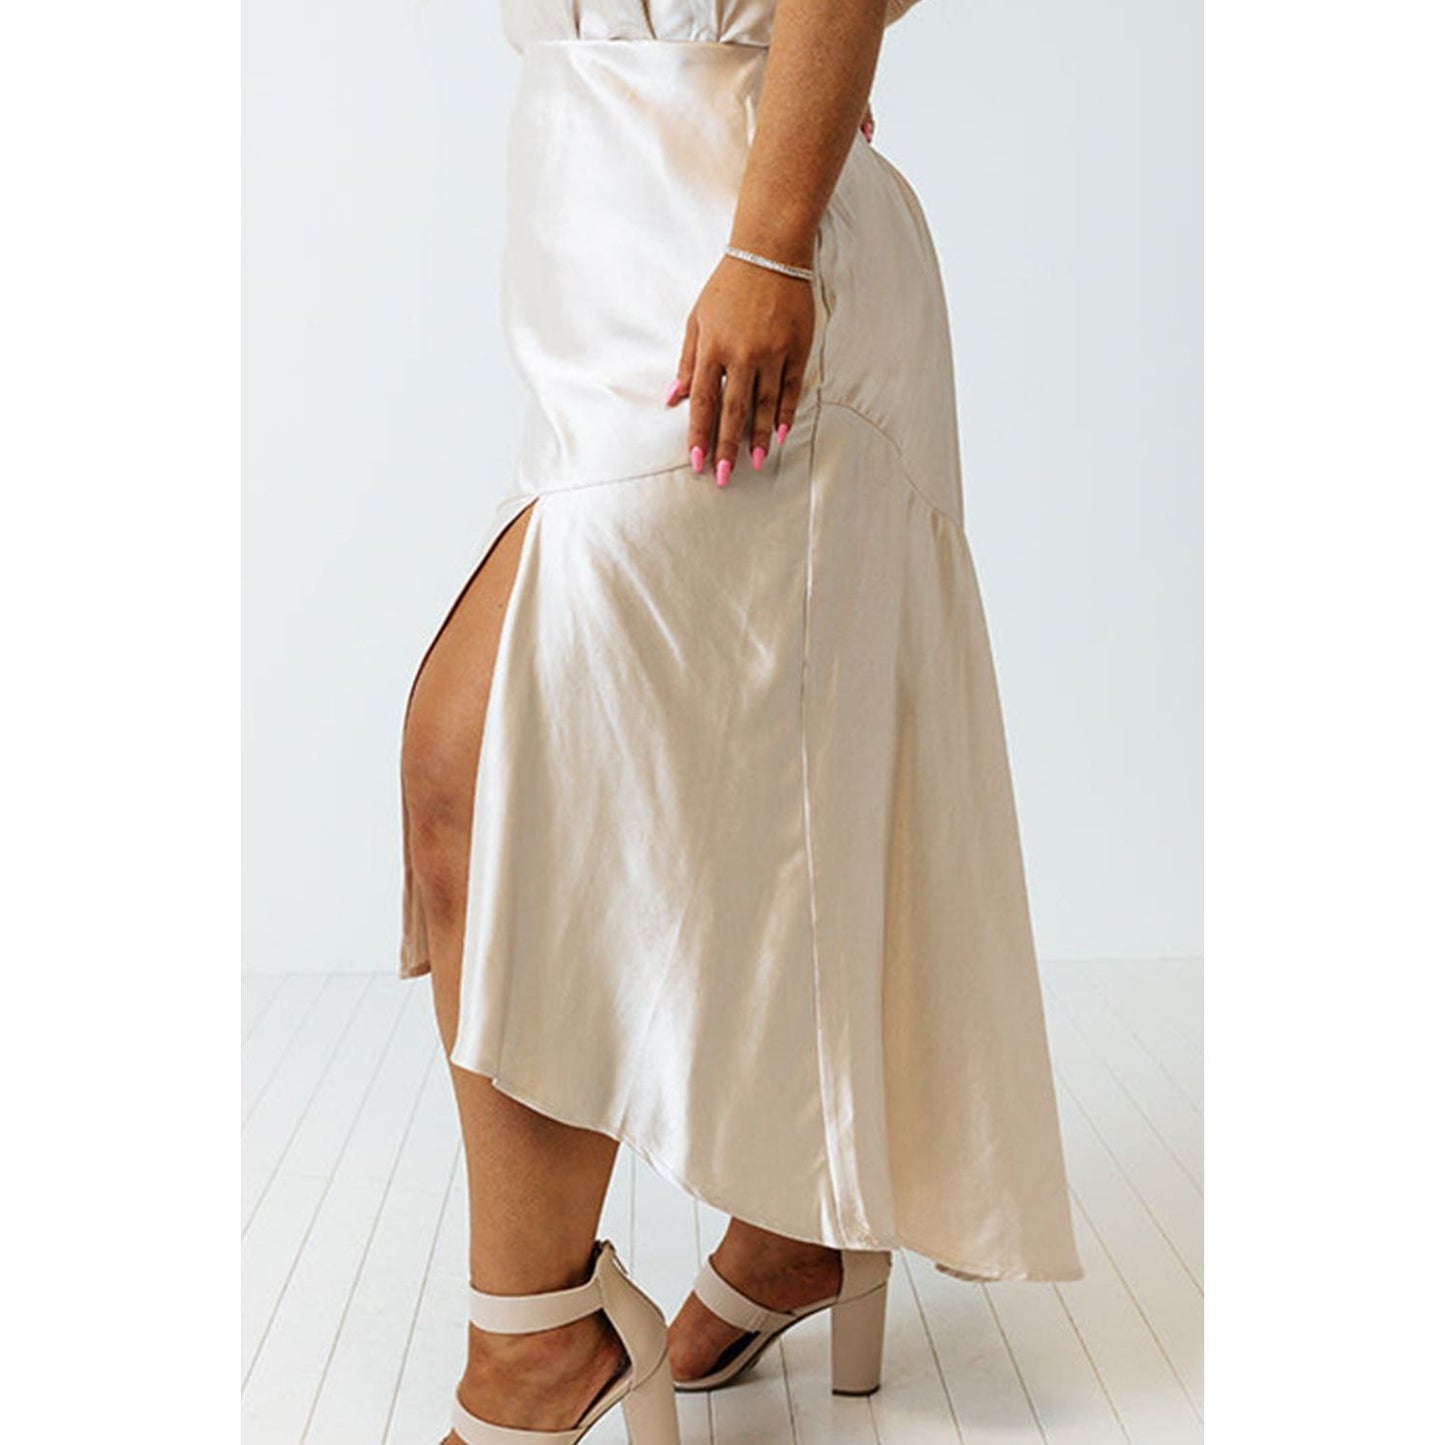 Luxe Ruffled Skirt - TiffanyzKlozet